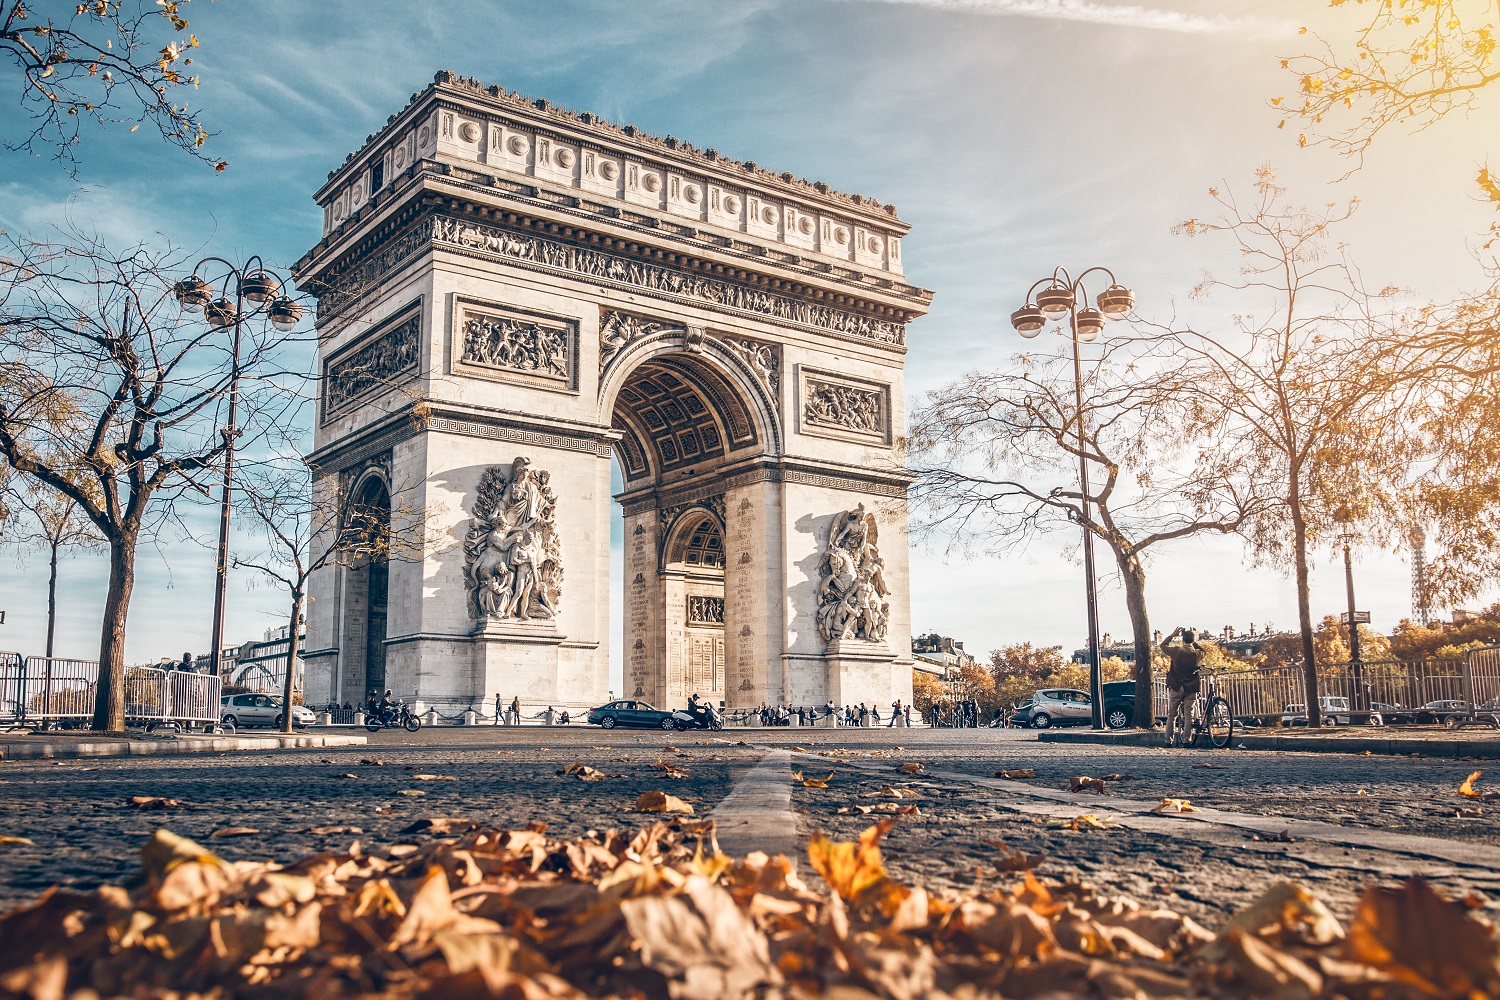 Clique do bonito Arco do Triunfo, um dos principais pontos turísticos de Paris | Crédito: Shutterstock